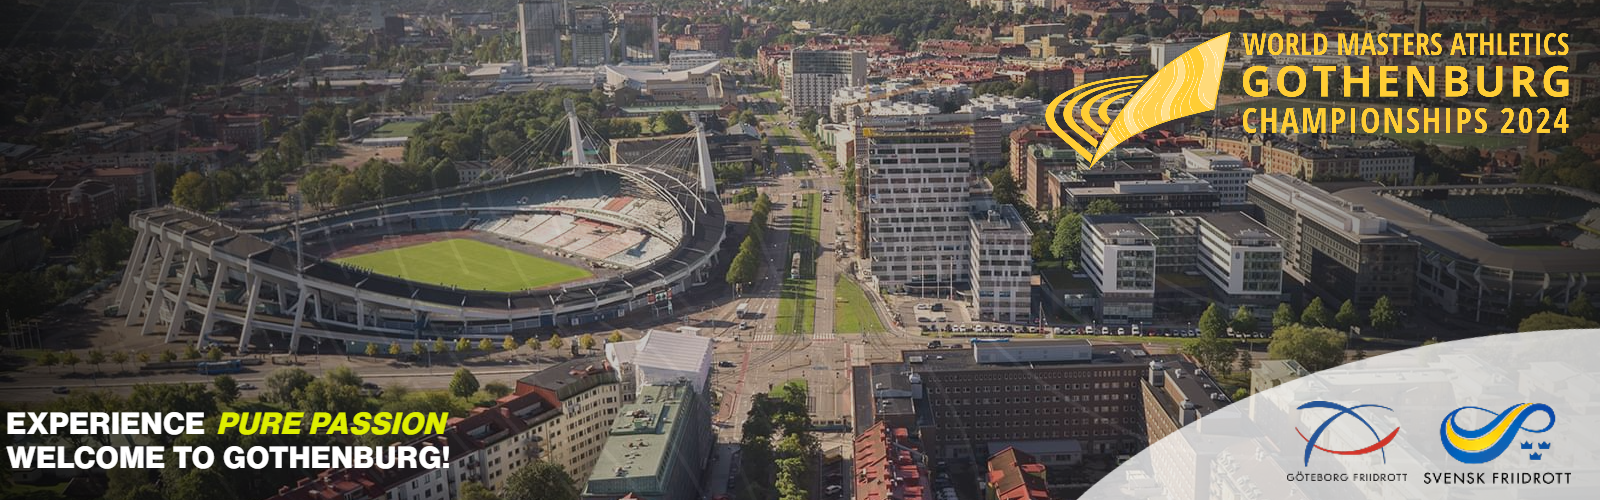 Gothenburg 2024 world Championships Aerial View